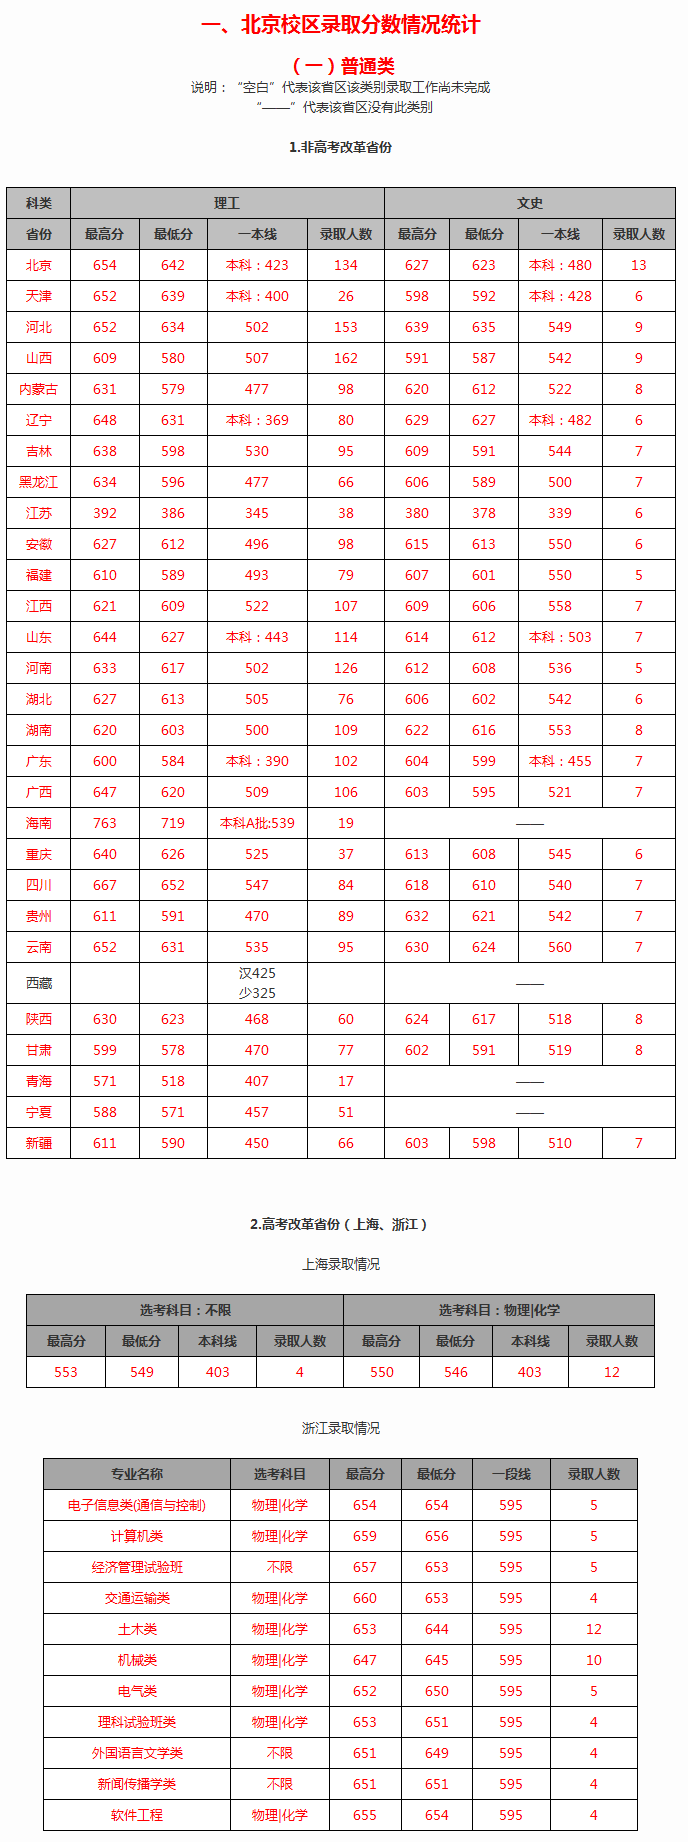 北京交通大学2019年高考招生录取分数情况统计1